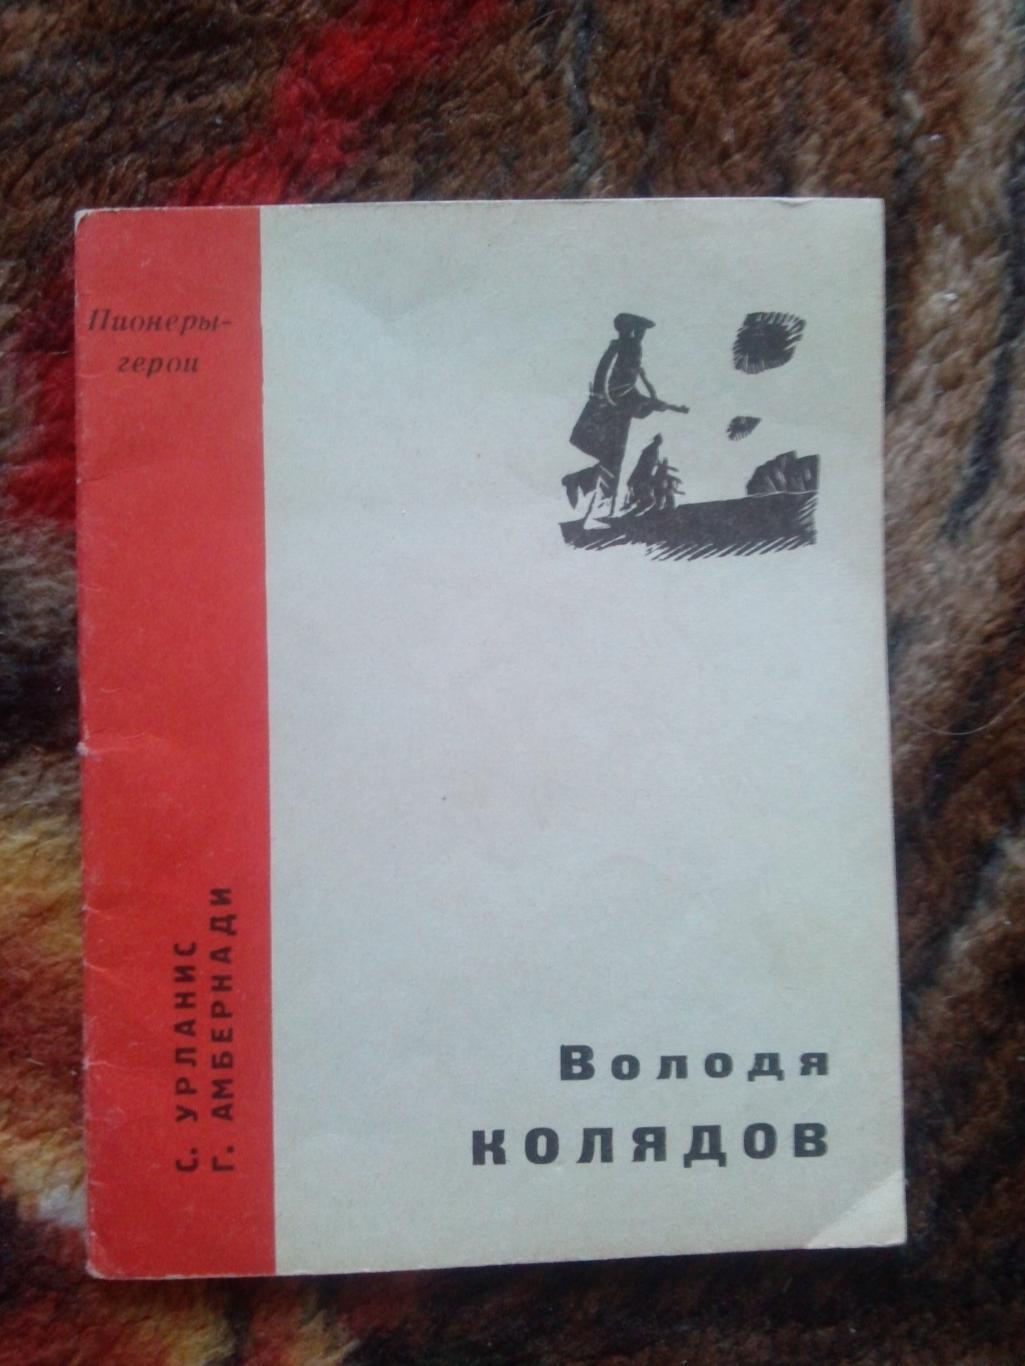 Пионеры-герои (Плакат + брошюра) 1967 г. Володя Колядов (Пионер , агитация) 3